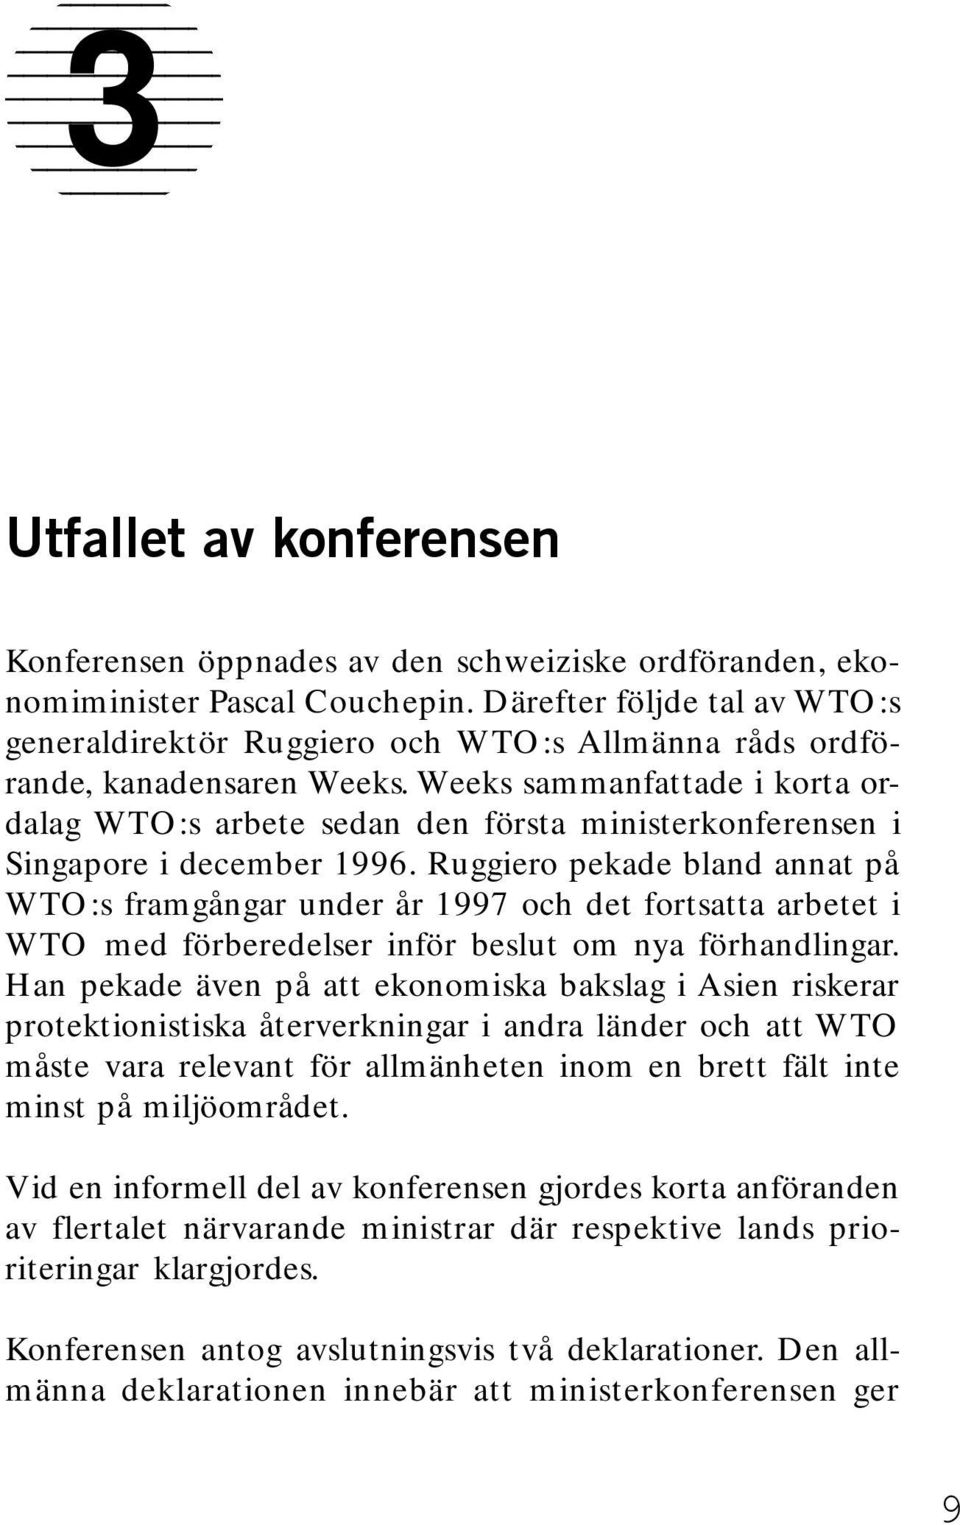 Ruggiero pekade bland annat på WTO:s framgångar under år 1997 och det fortsatta arbetet i WTO med förberedelser inför beslut om nya förhandlingar.